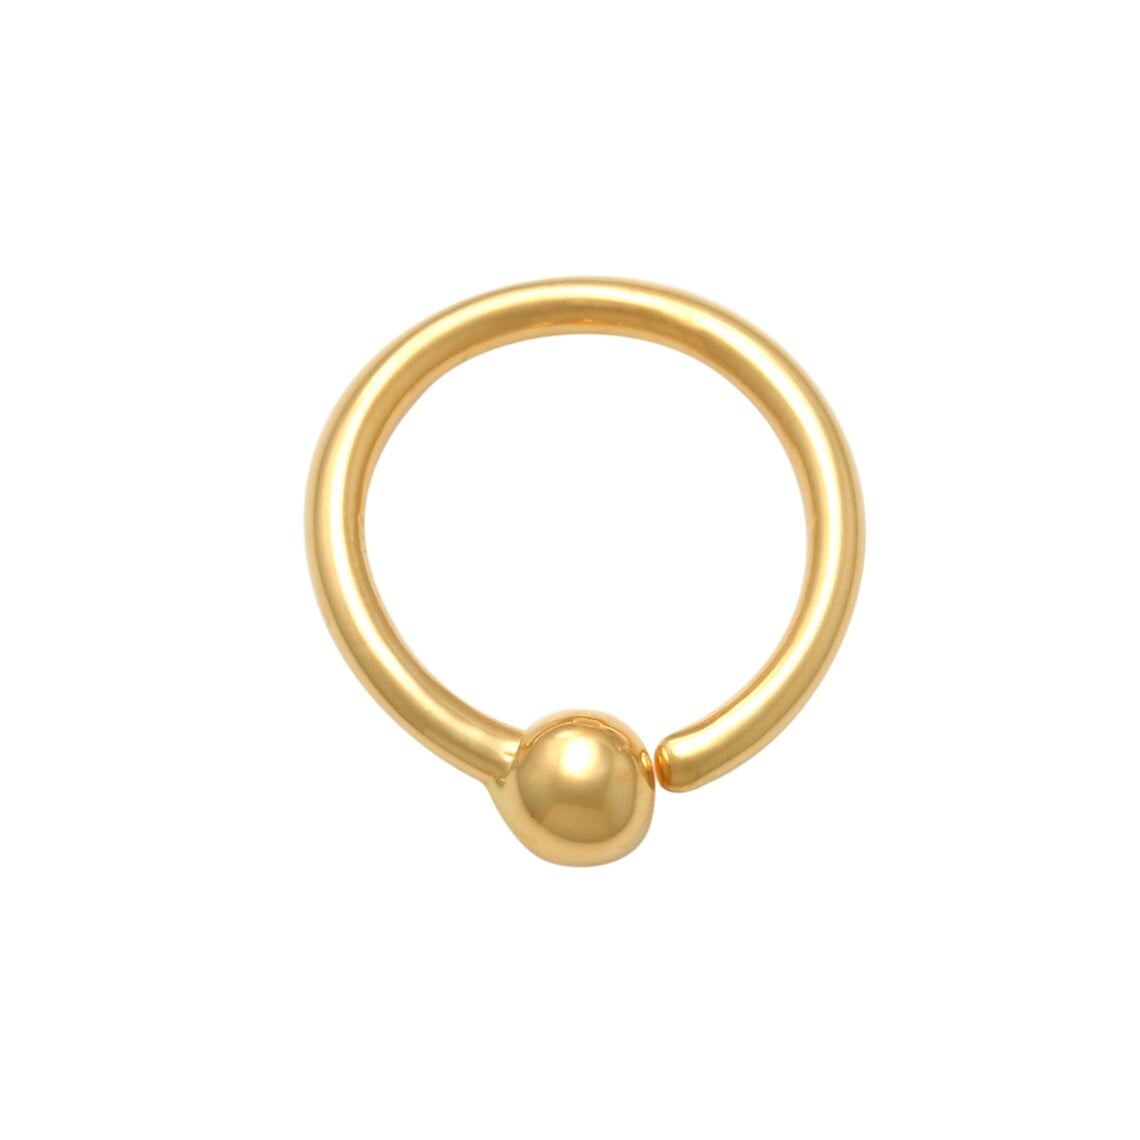 Freshwater Pearl Gold Helix Ring-Silver Cartilage Hoop-16-22Gauge-8-12mmDiameter 